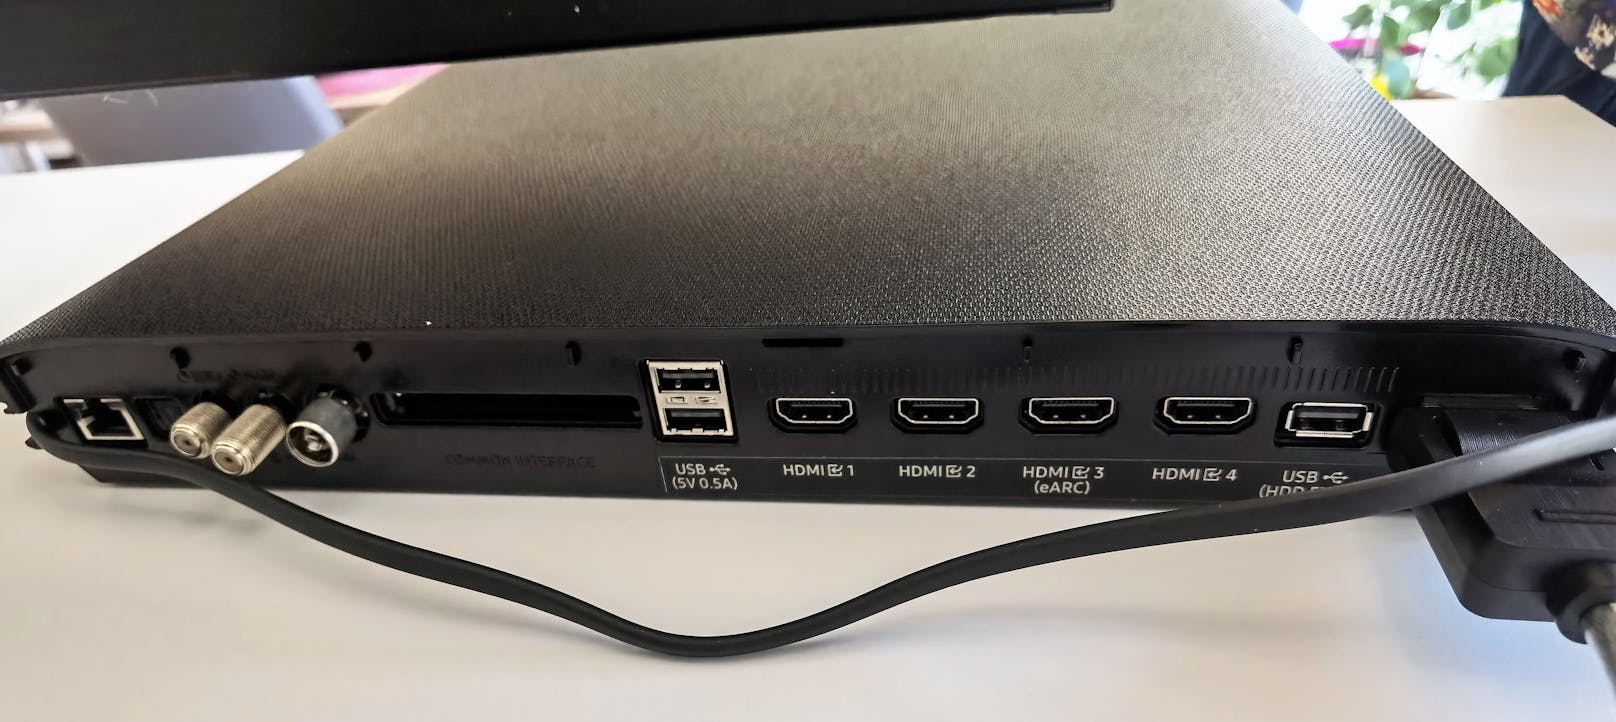 Die Box ist gleichzeitig auch das Anschluss-Herzstück des Fernsehers, das ihn per Kabel mit Strom versorgt und alle möglichen Anschlüsse von Antennen-Verbindungen sowie vier HDMI-2.1-Eingängen über drei USB-Ports bis hin zum CI-Steckplatz bietet.